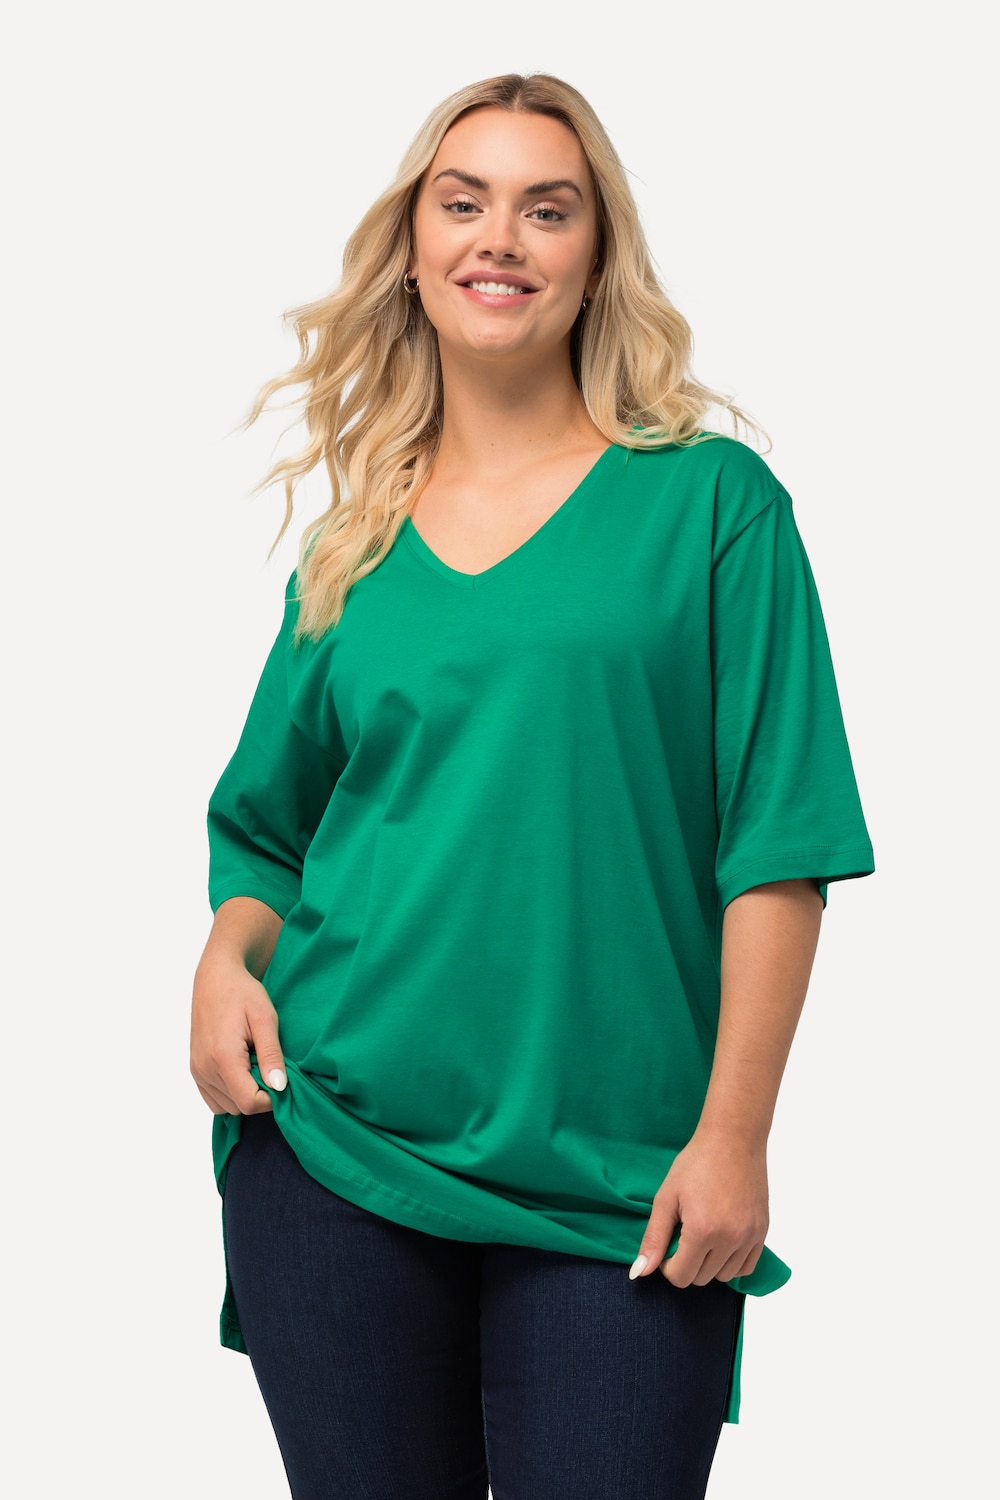 Grote Maten T-Shirt, Dames, groen, Maat: 50/52, Katoen/Viscose, Ulla Popken